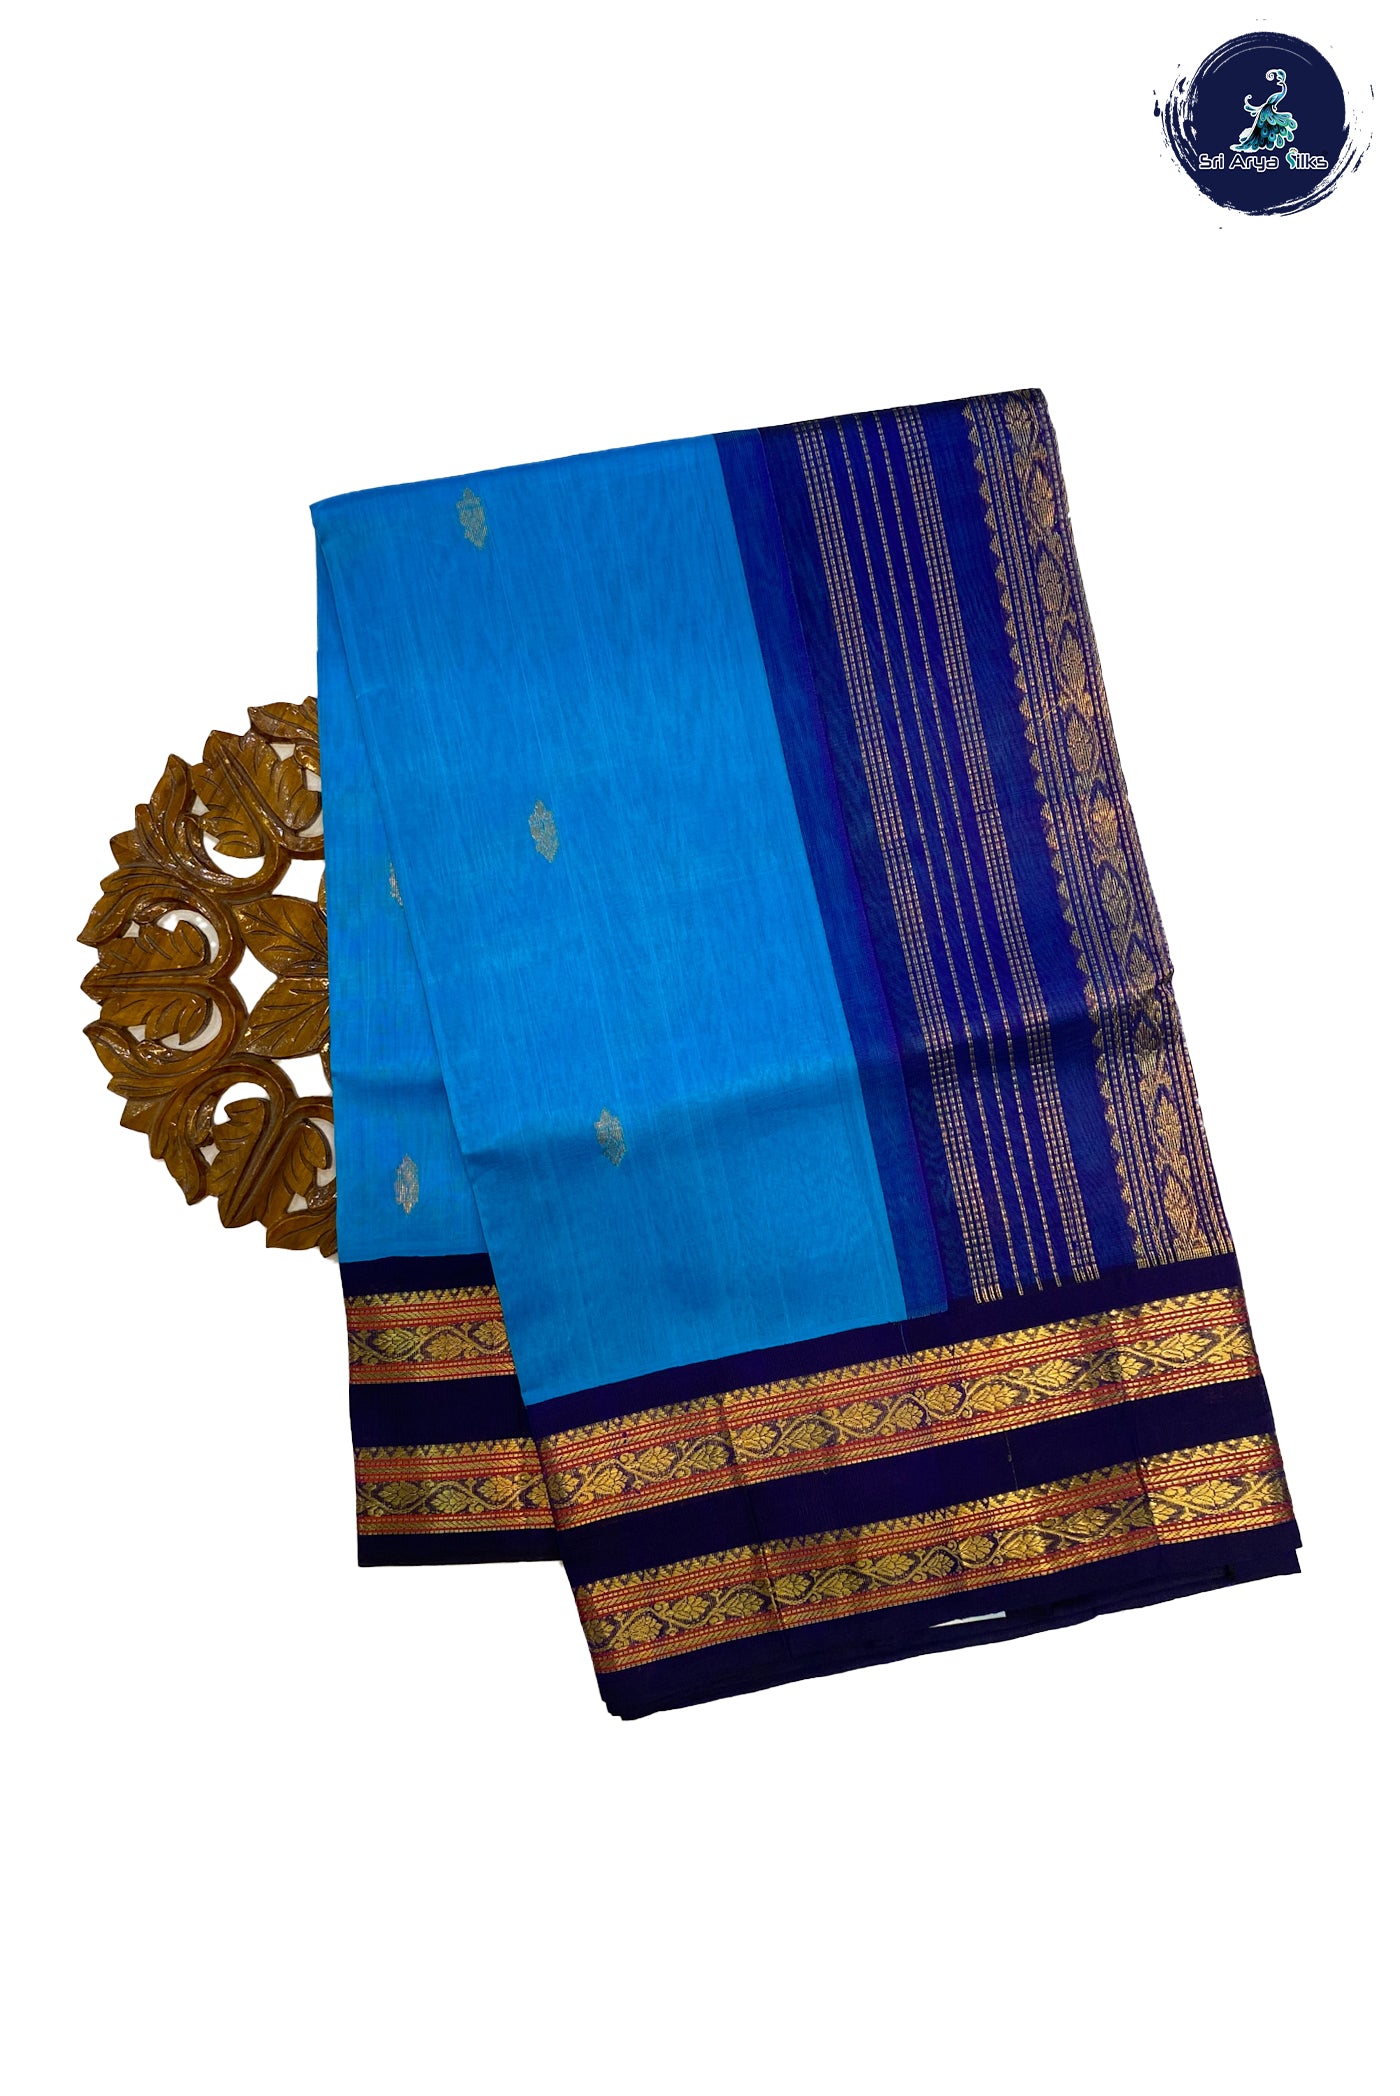 Sky Blue Korvai Silk Cotton Saree With Zari Buttas Pattern